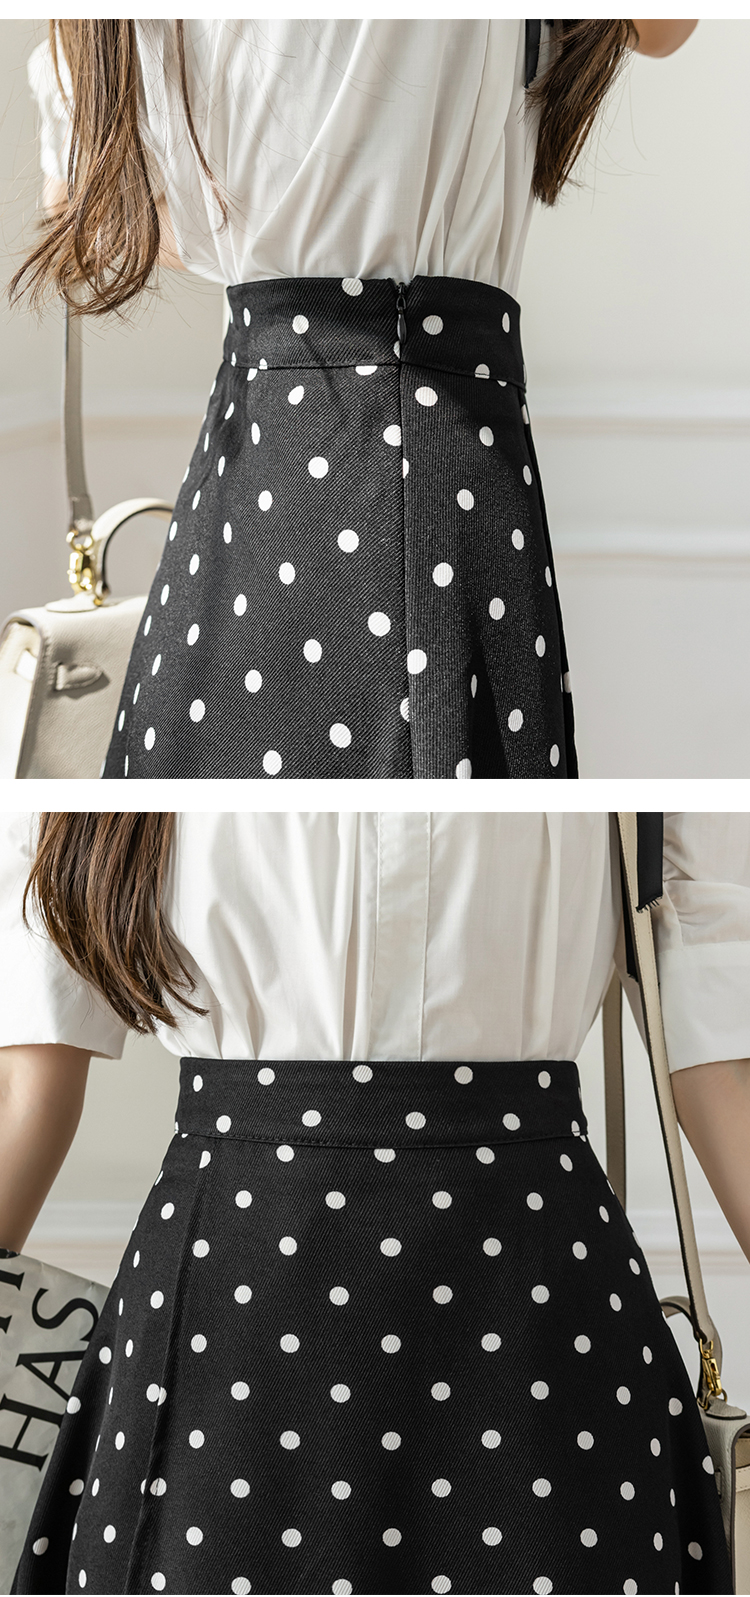 Big skirt irregular long dress polka dot long skirt for women